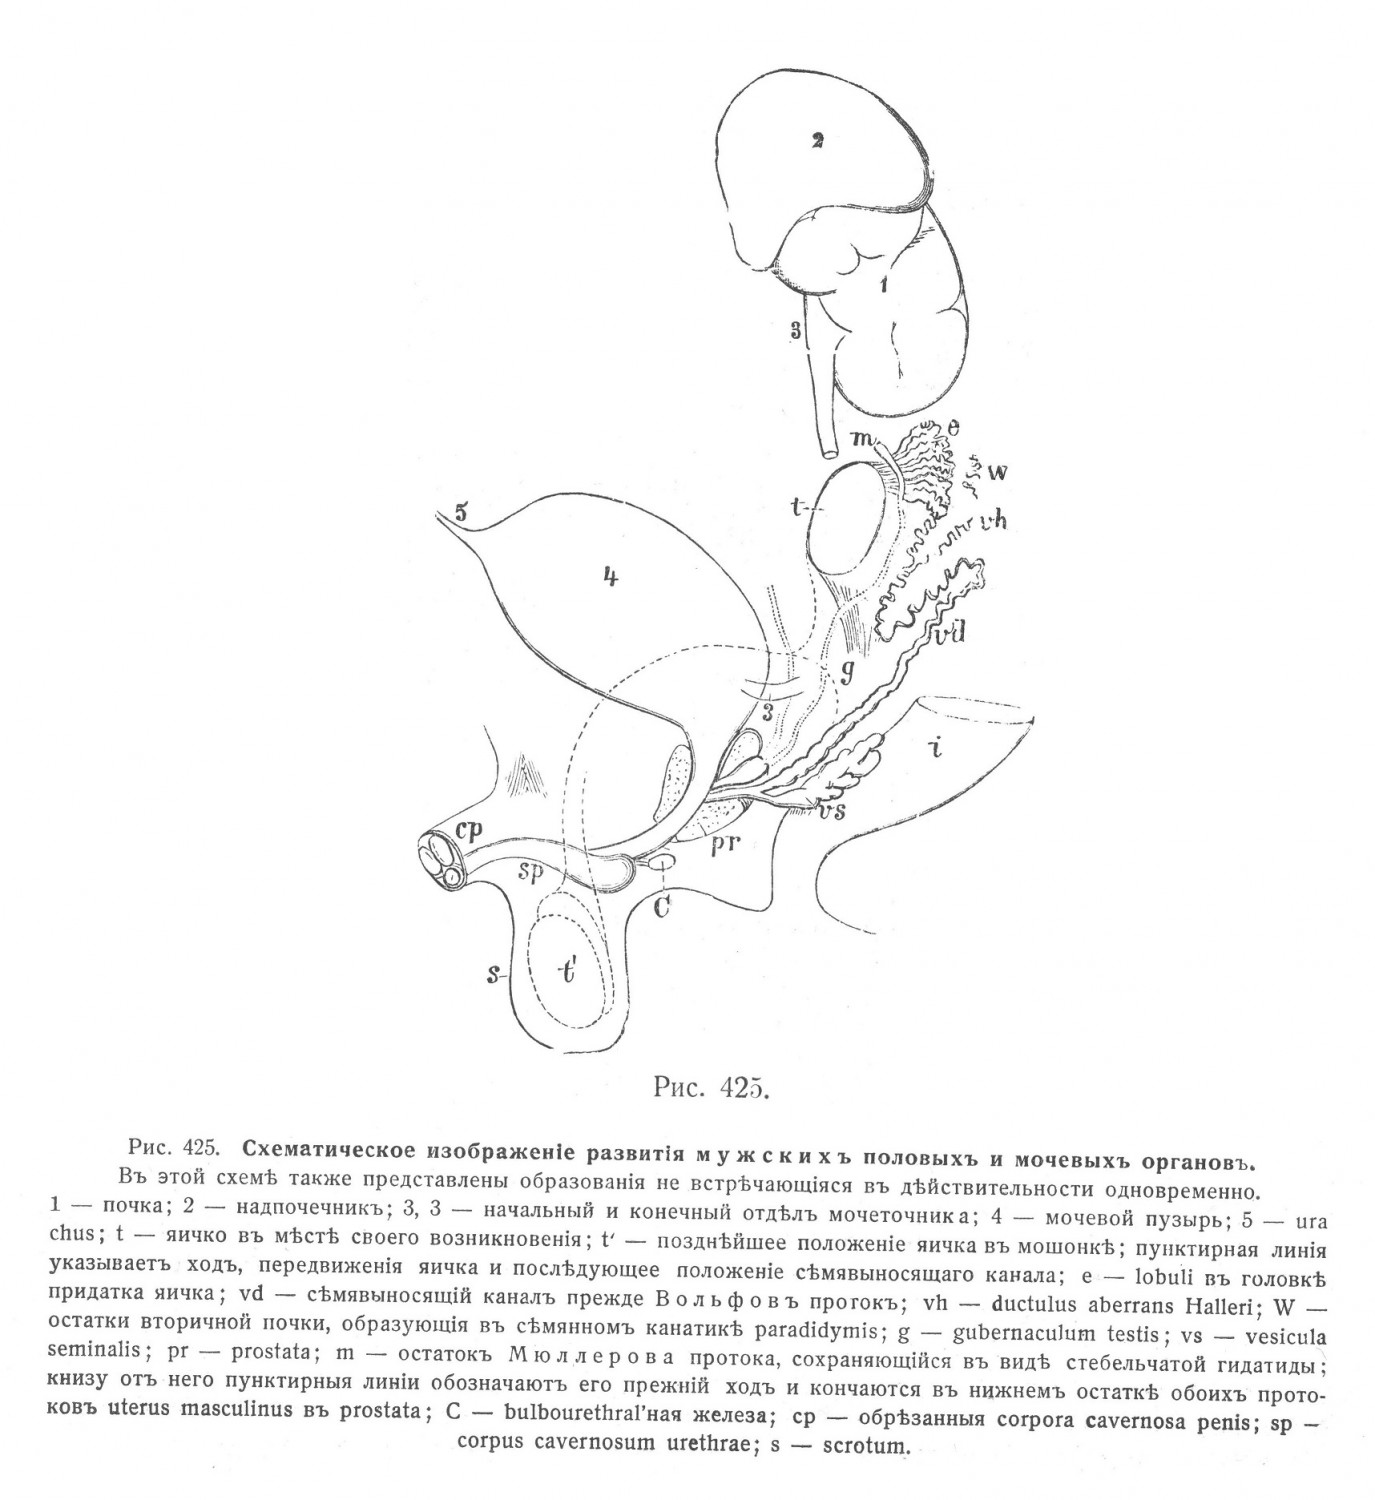 изображение развития мужских половых и мочевых органов